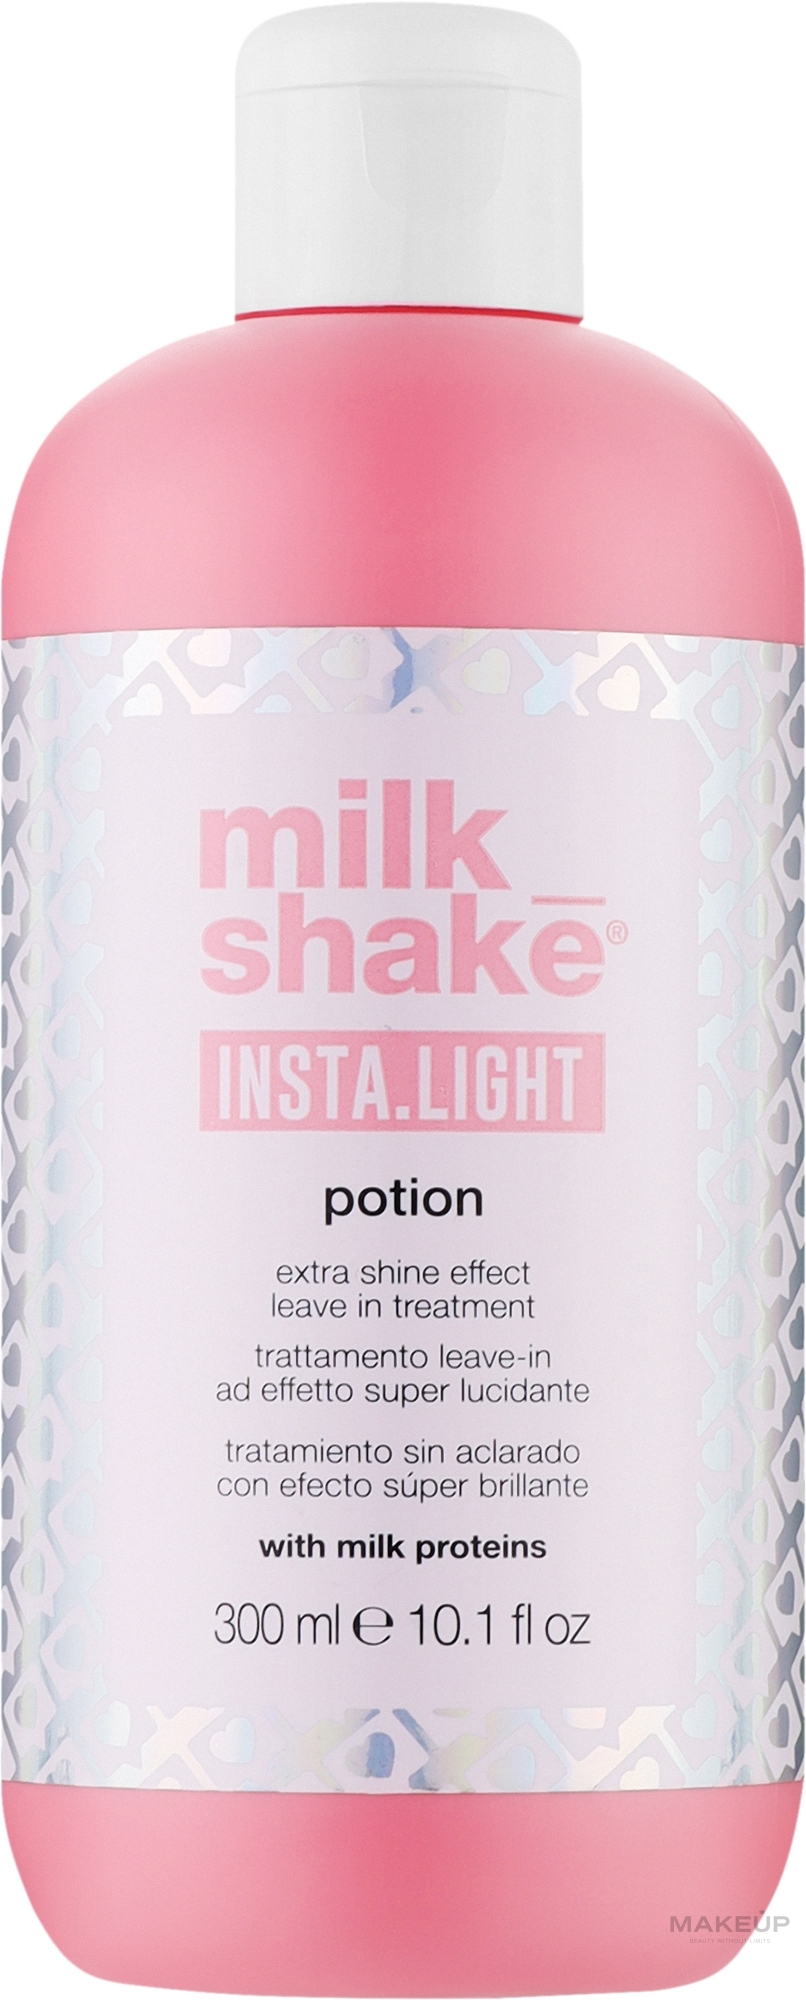 Несмываемый лосьон для волос - Milk_Shake Insta.Light Potion — фото 300ml